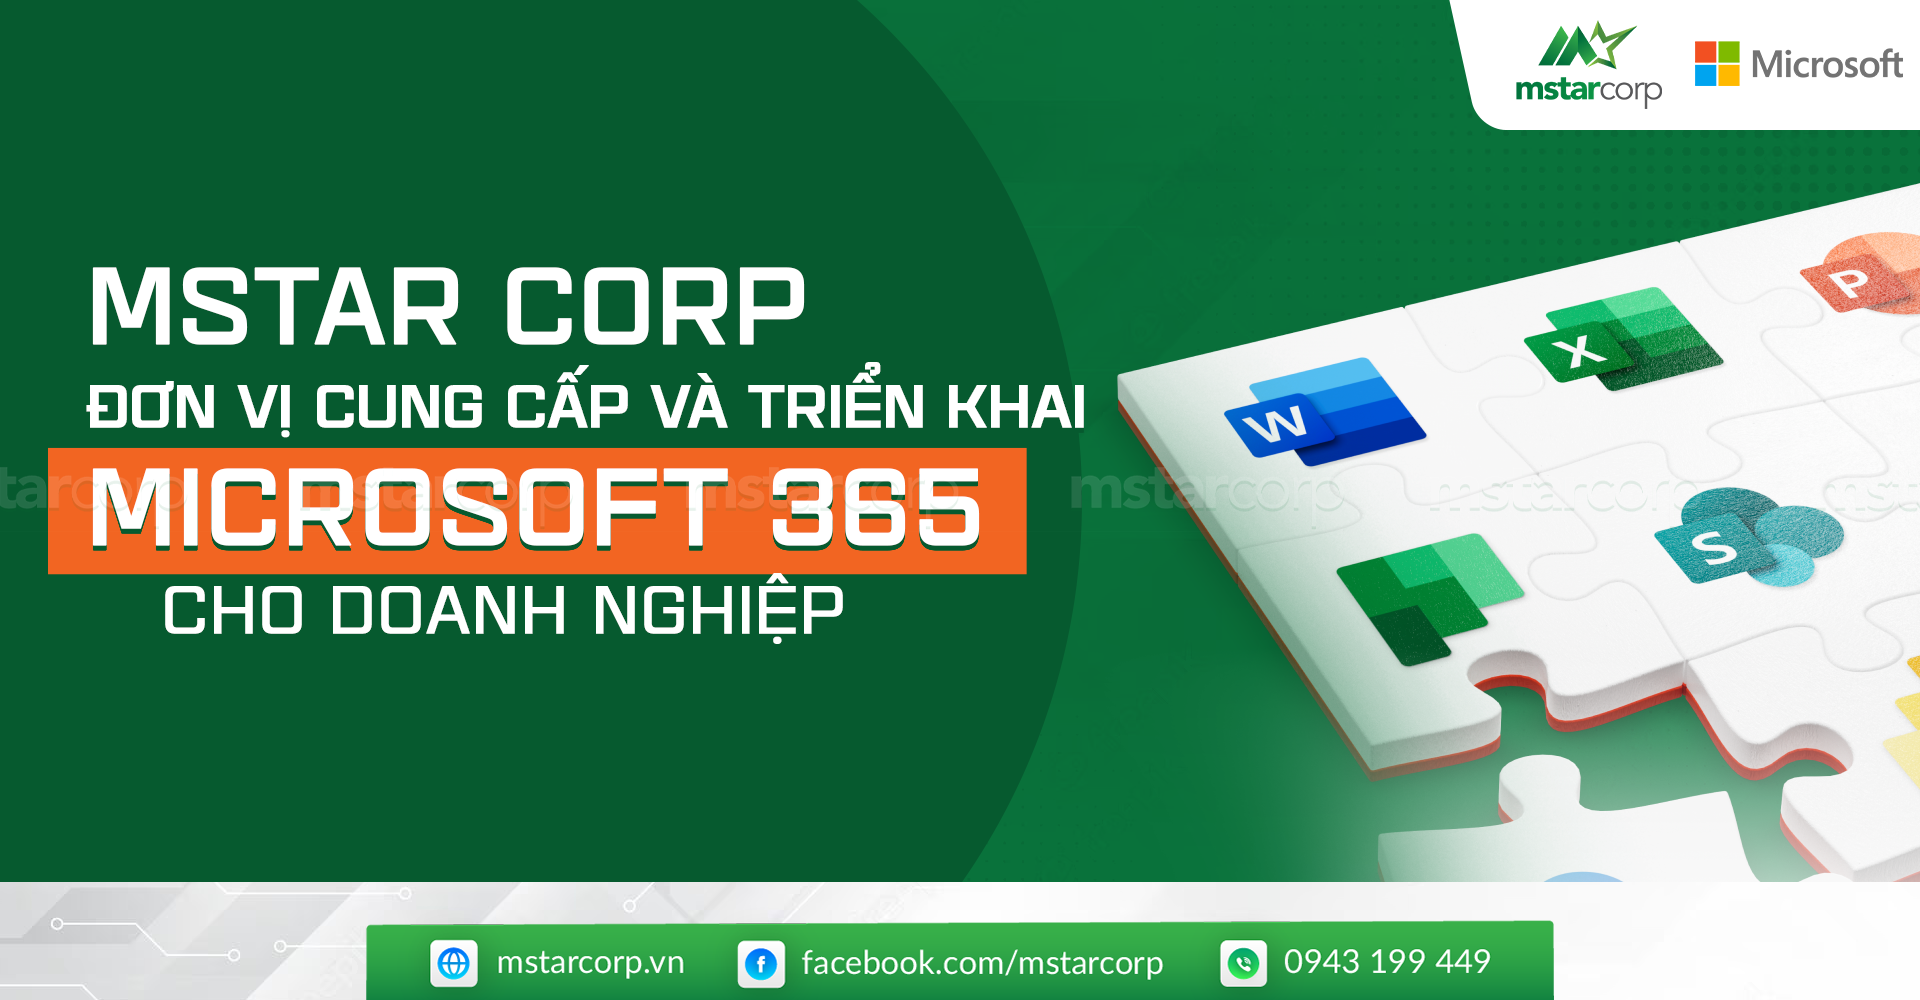 Mstar Corp là đơn vị cung cấp và triển khai Microsoft 365 tại Việt Nam